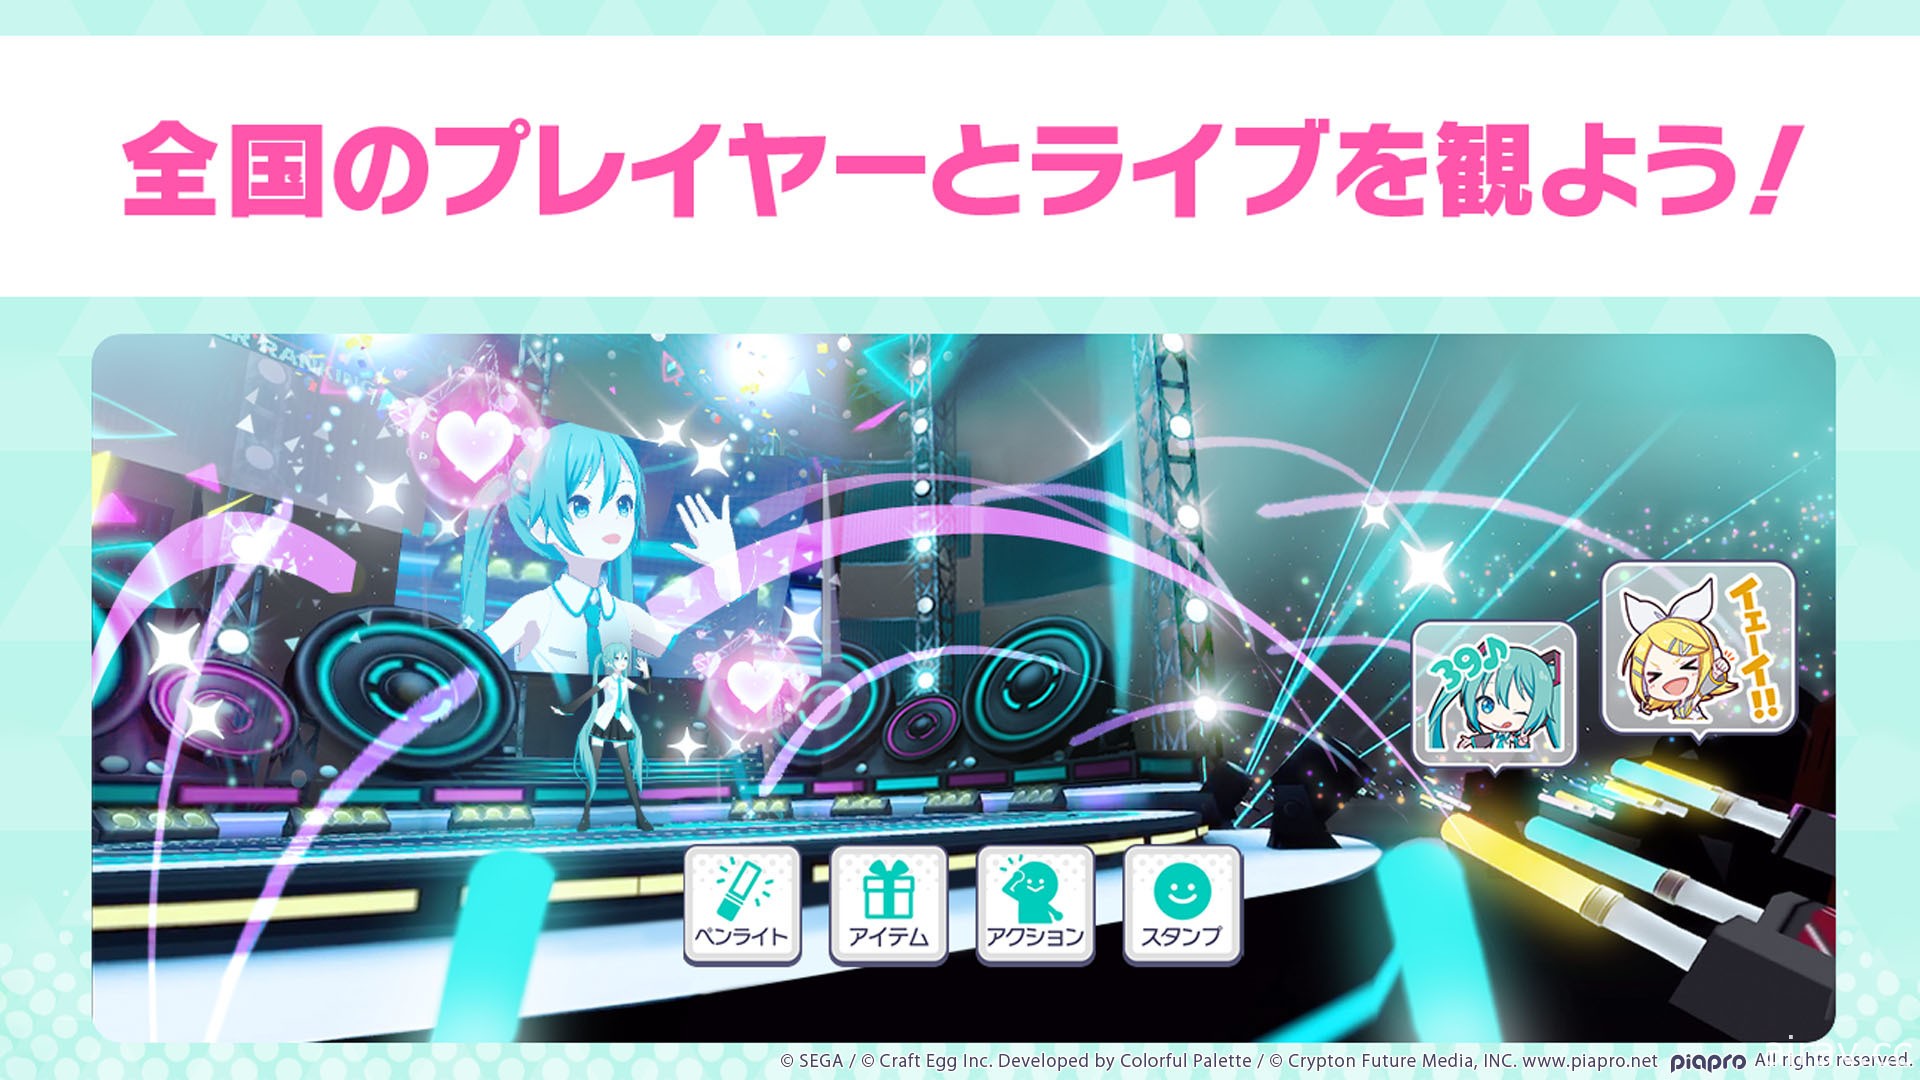 《世界計畫 彩色舞台 feat. 初音未來》發表「虛擬 Live」功能 體驗版遊戲 9 月 4 日推出